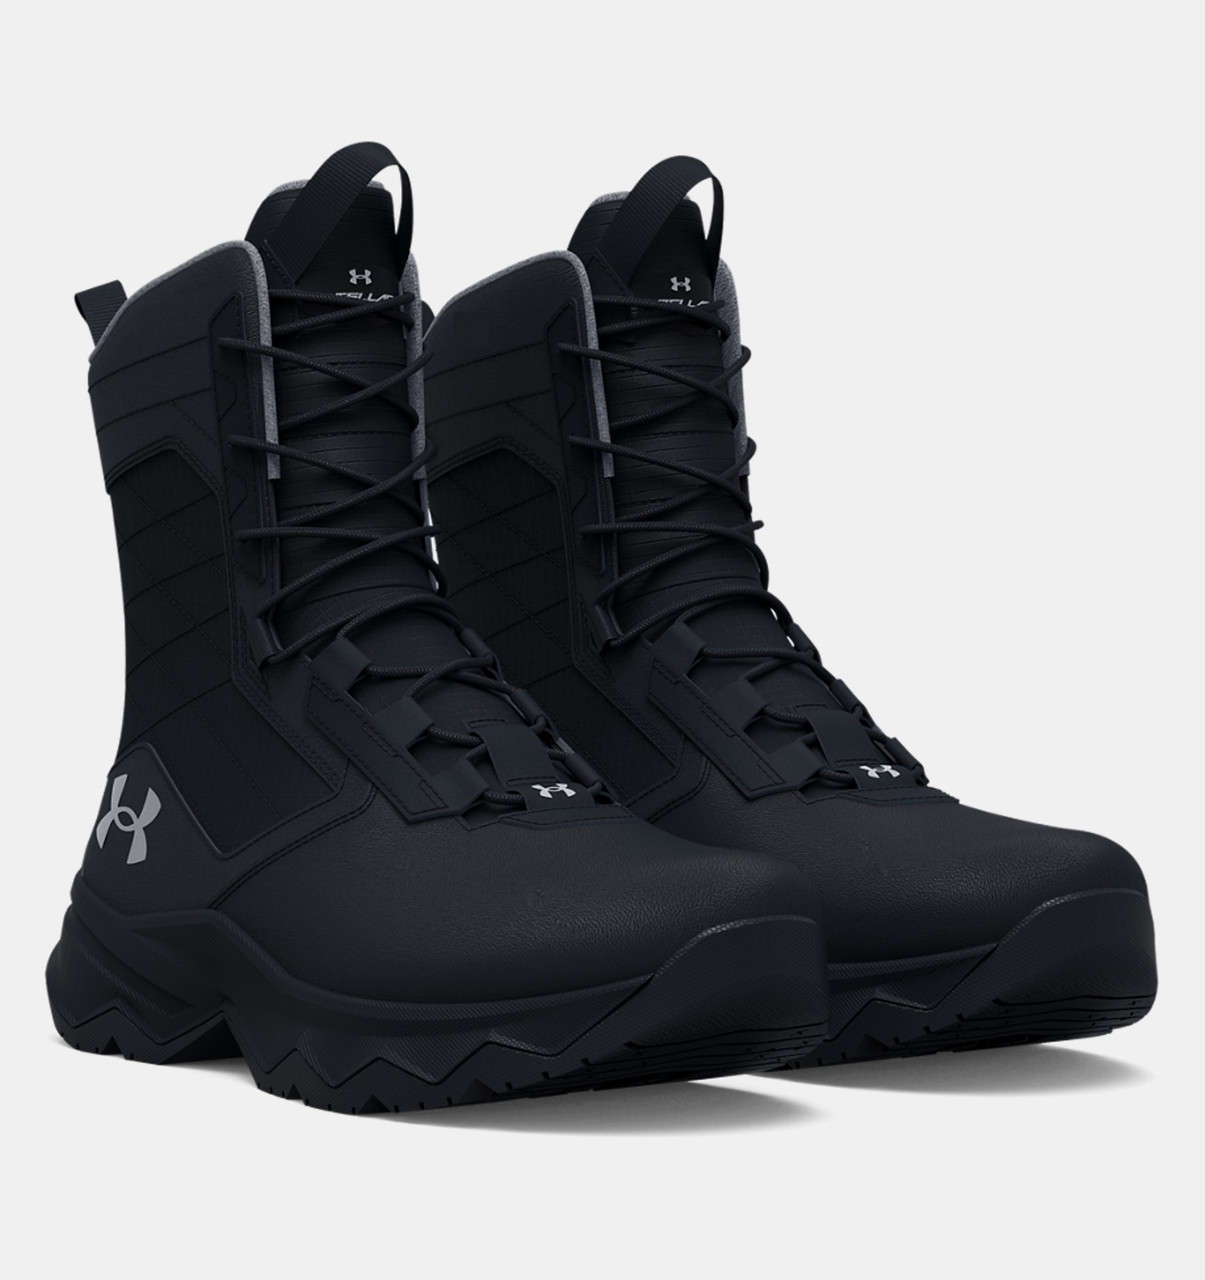 UA Tactical Men's Stellar G2 Tactical Boots Black